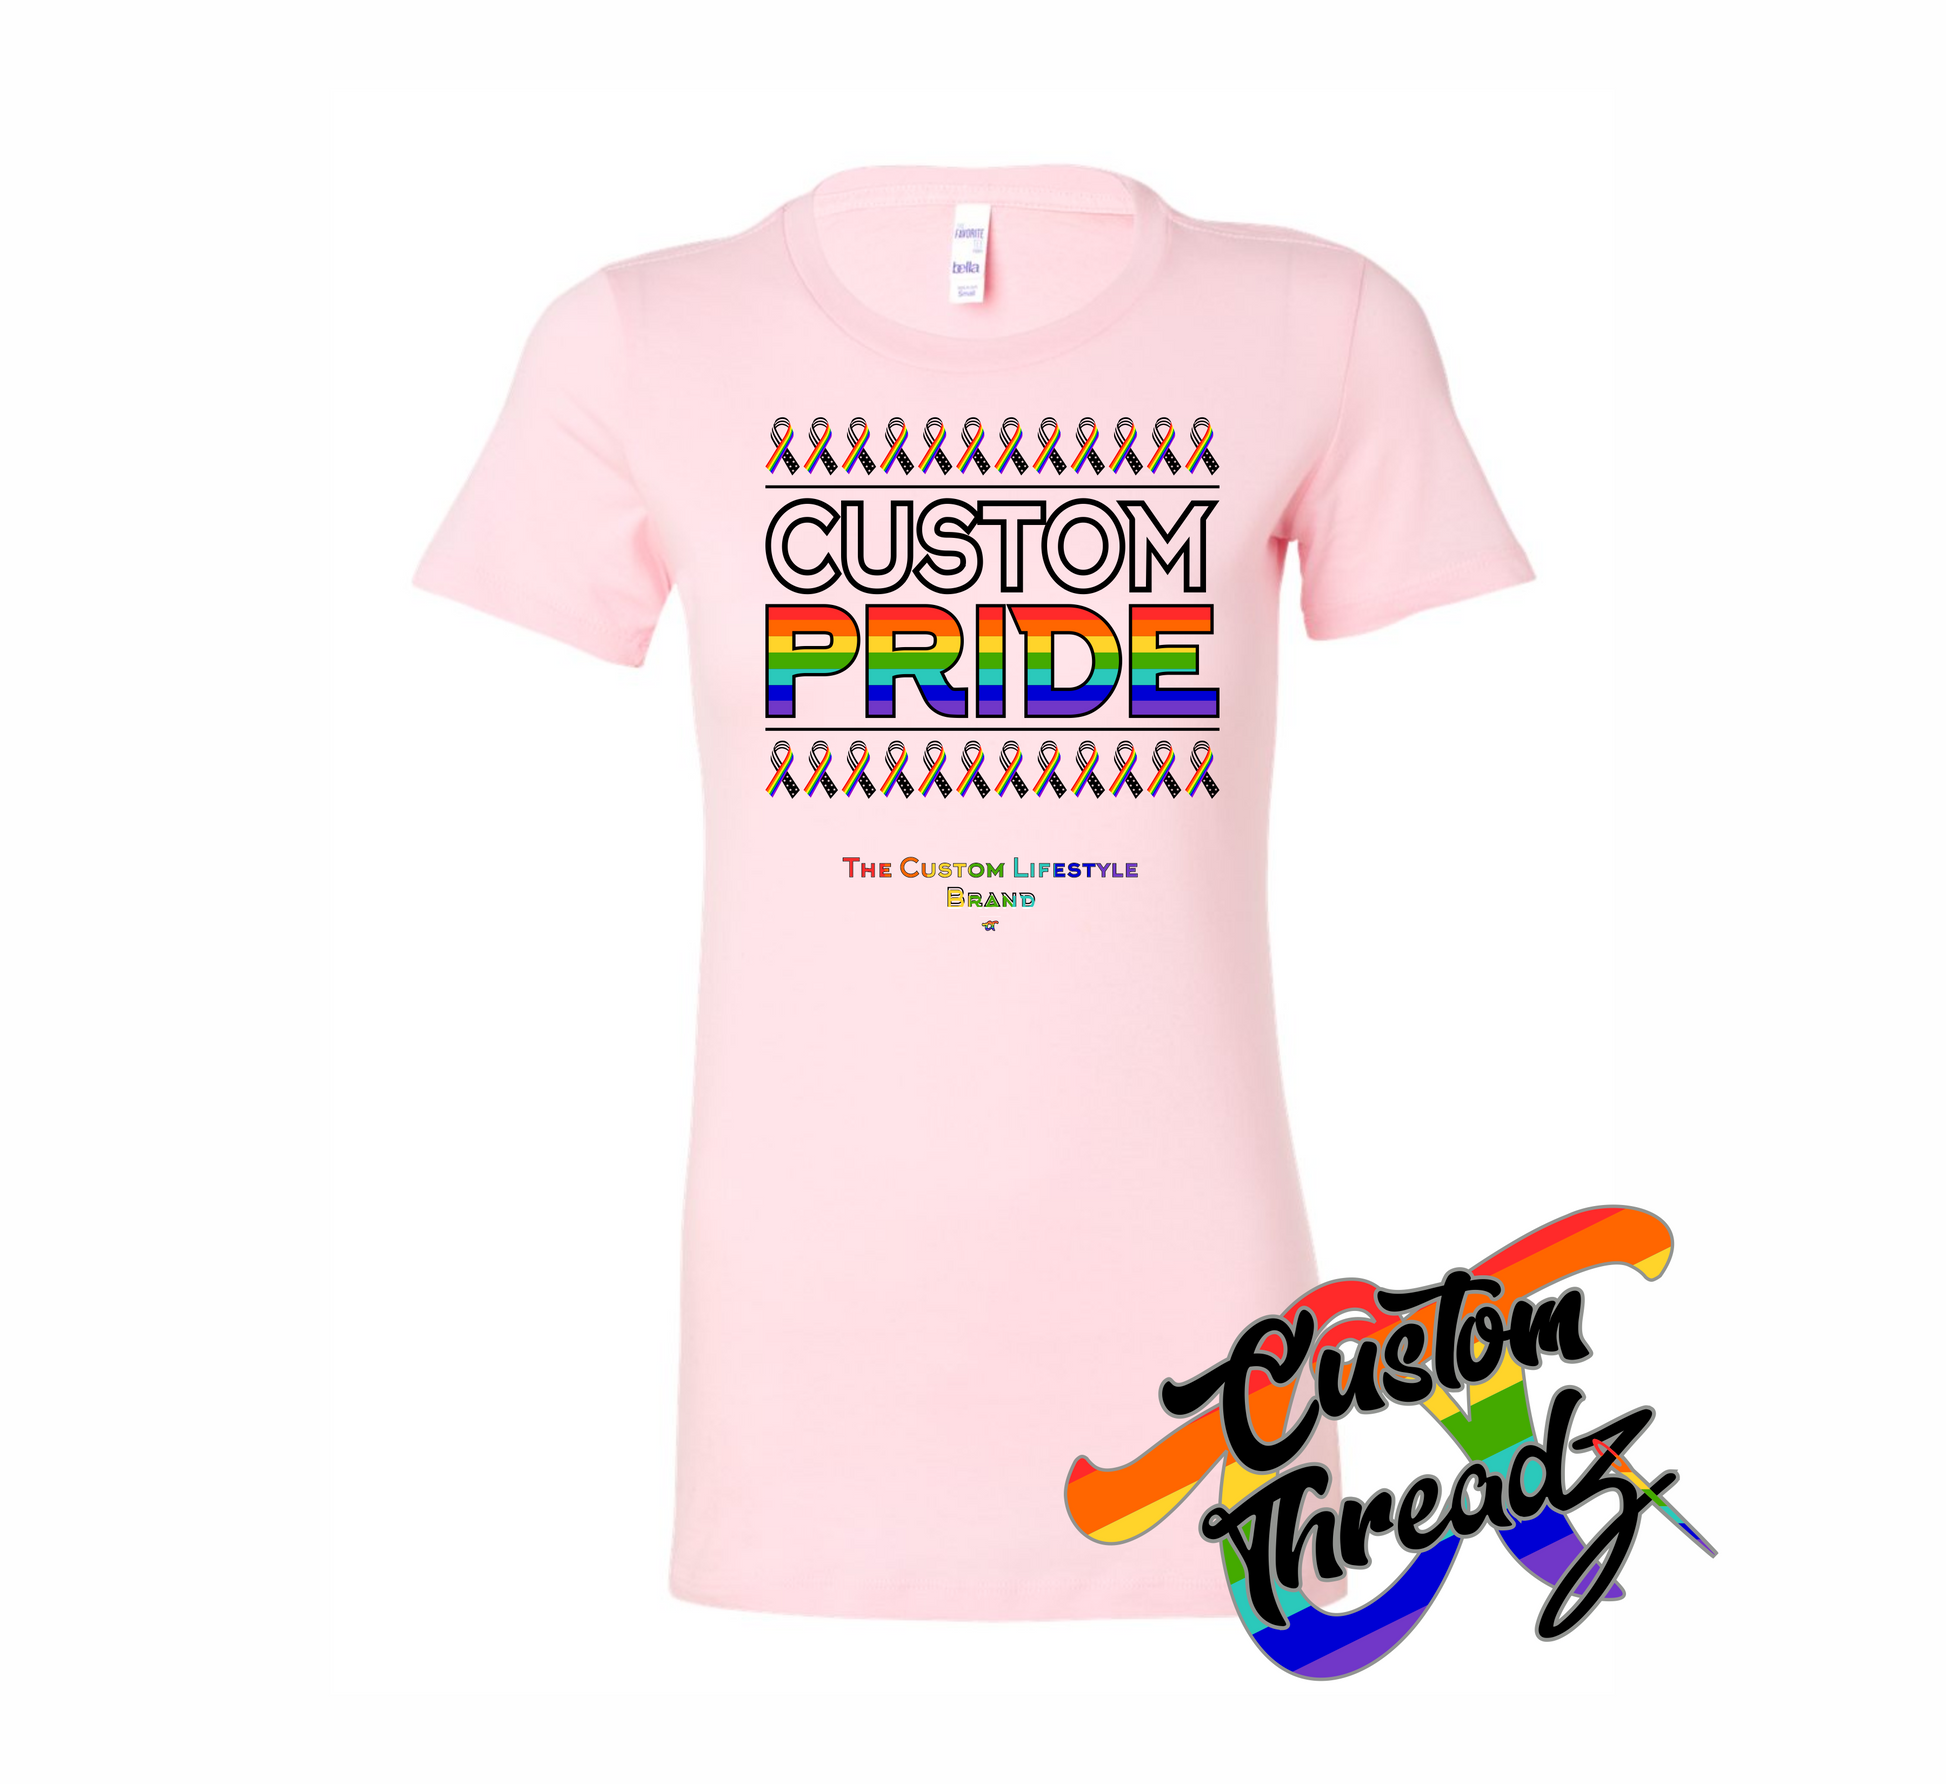 pink womens tee with custom pride rainbow DTG printed design